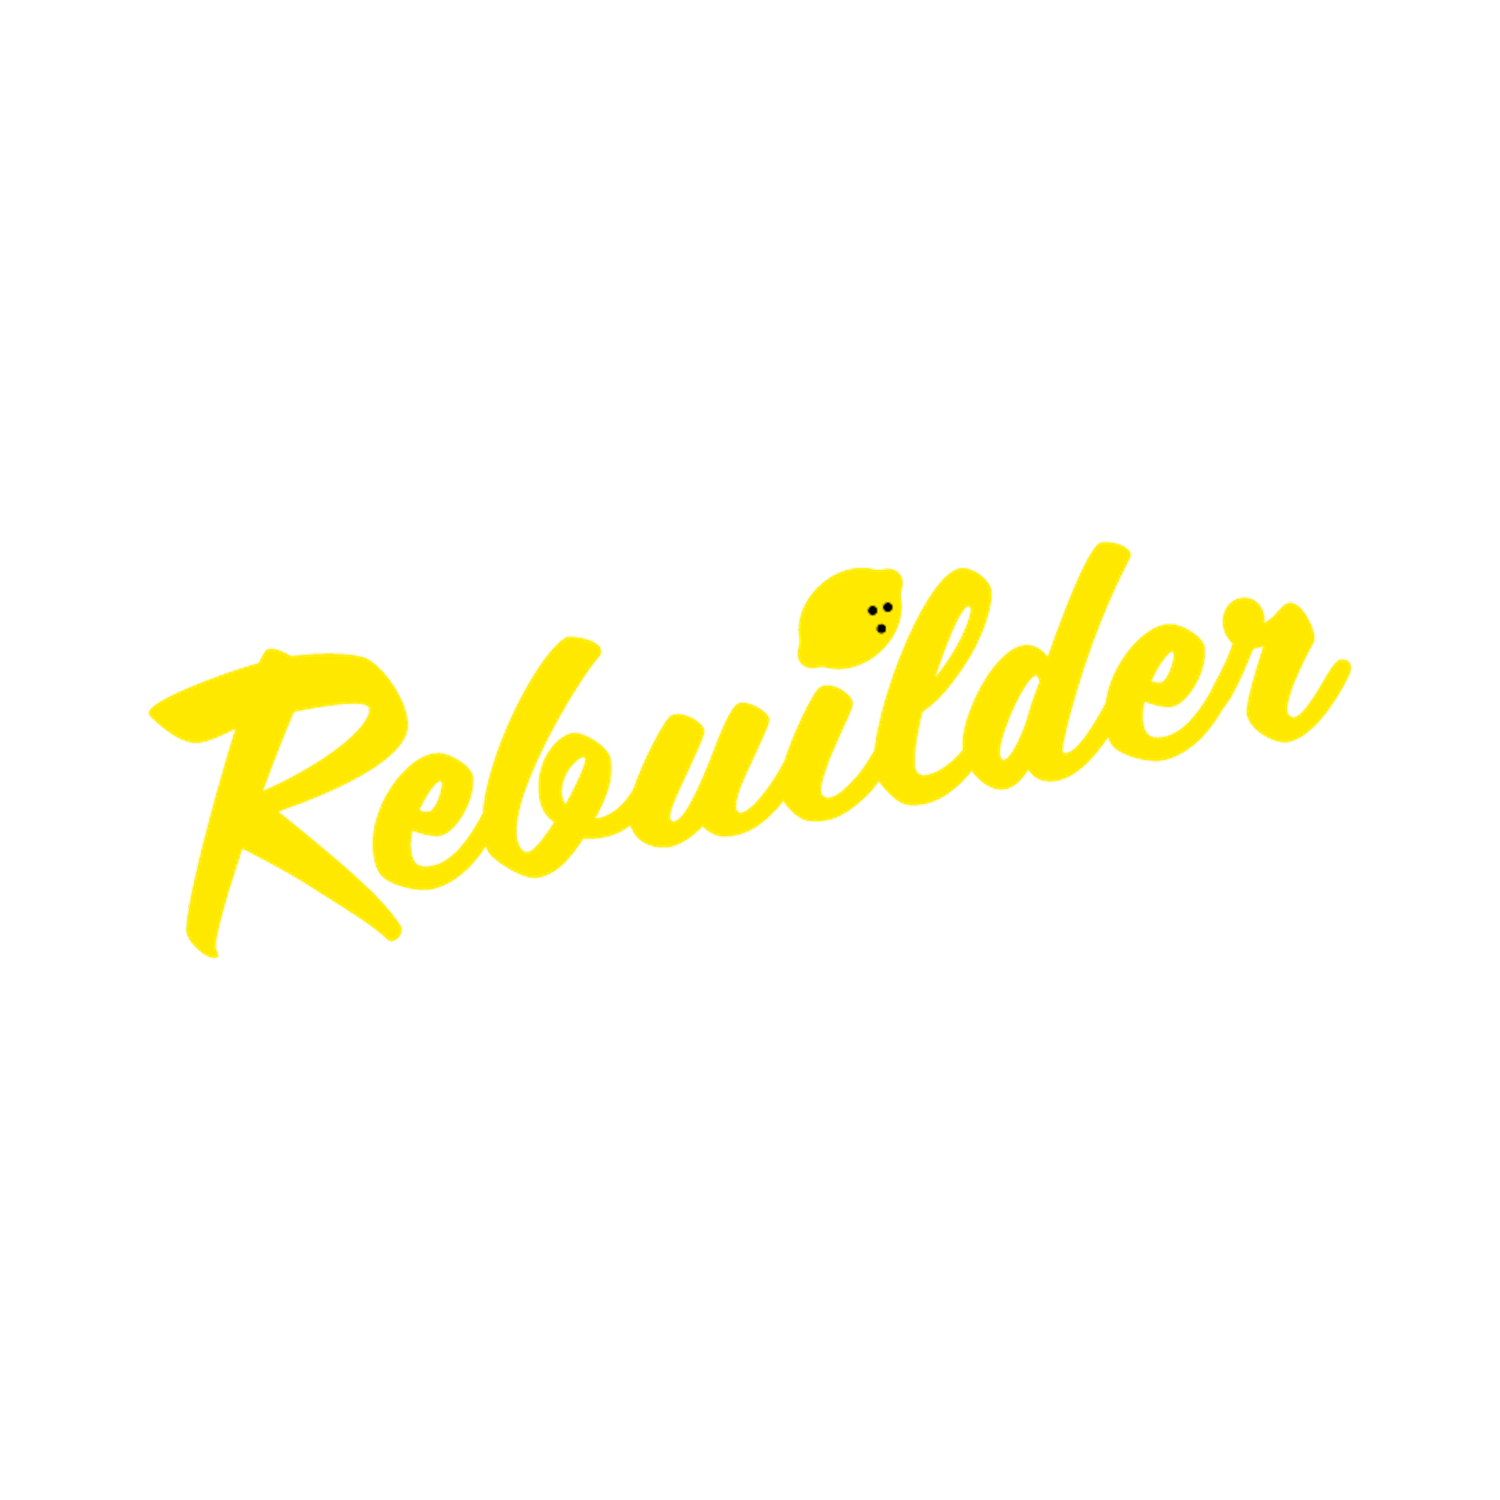 Rebuilder